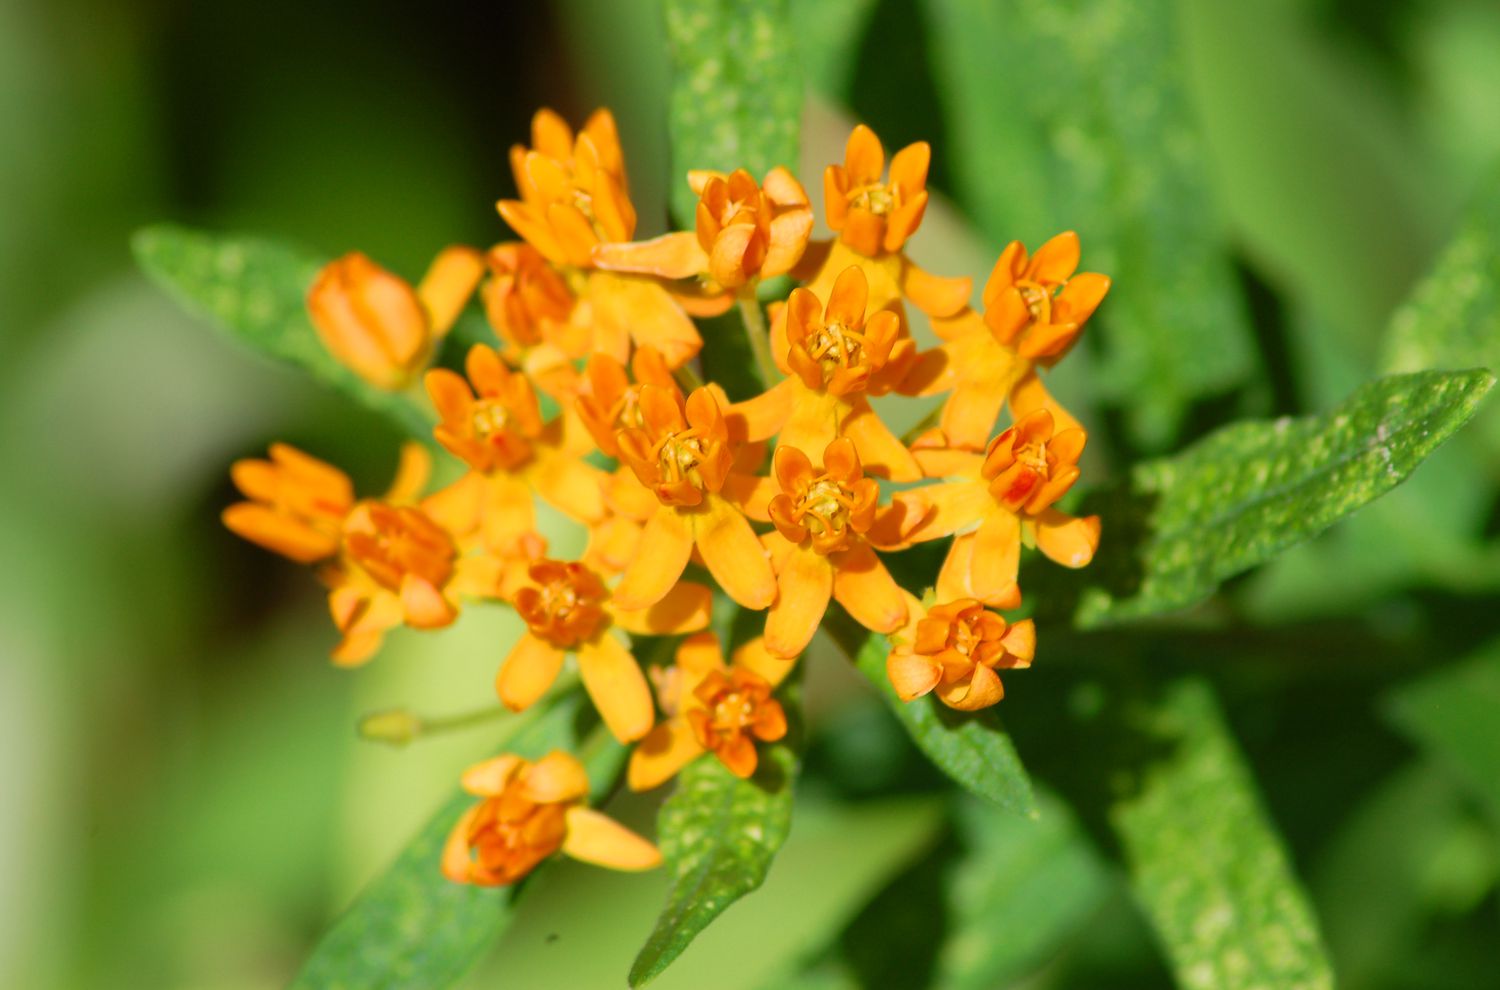 La hierba de las mariposas (imagen) tiene flores naranjas. Este imán de mariposas es una Asclepias